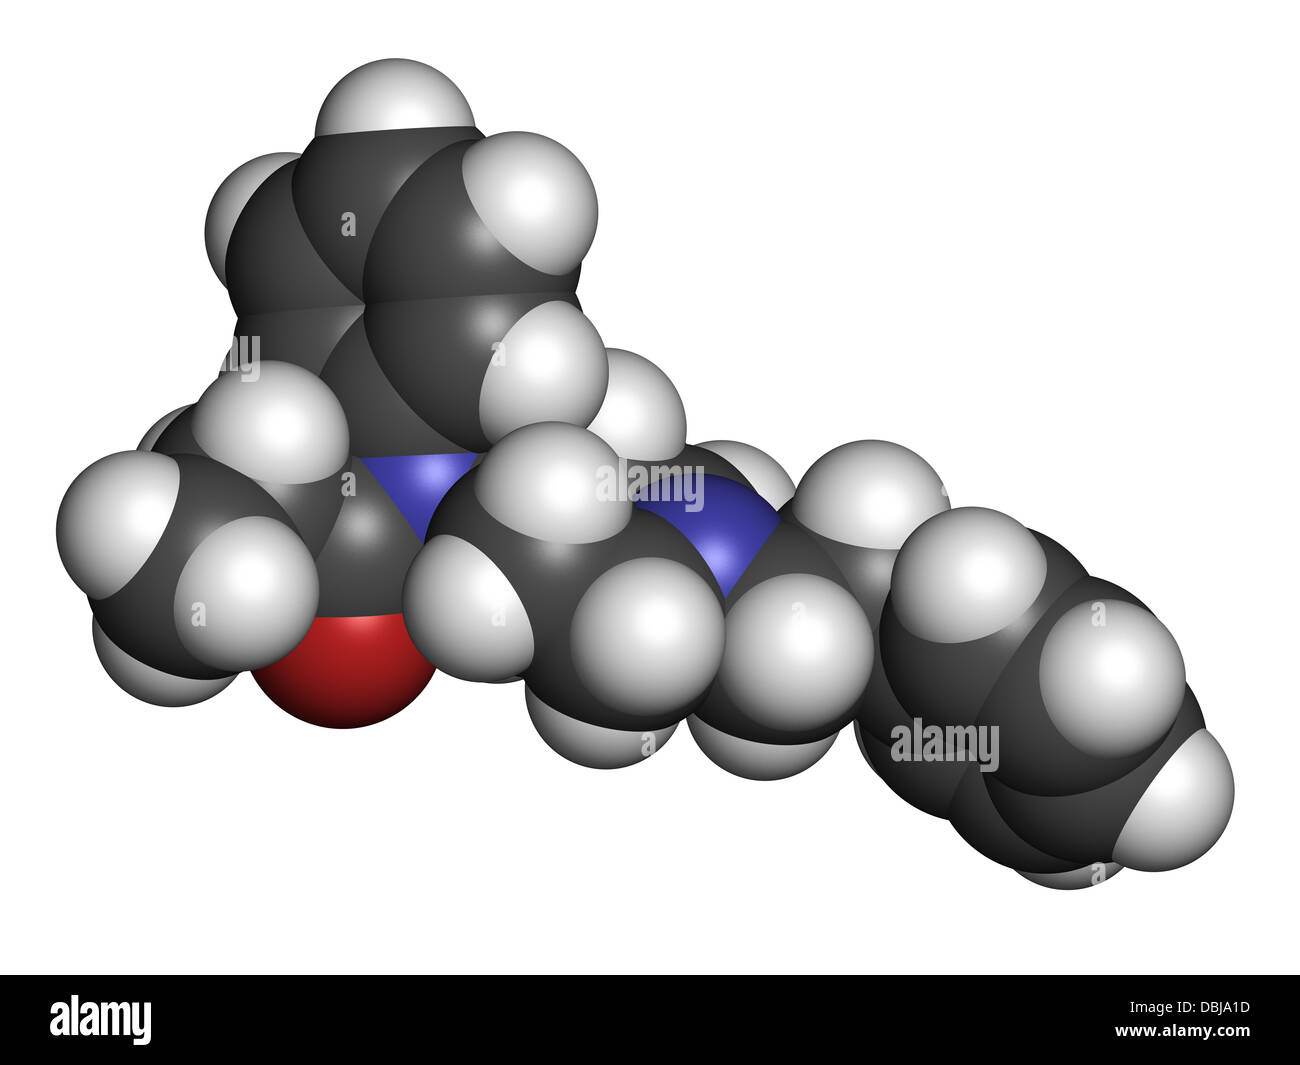 Fentanil (fentanyl) médicament analgésique opioïde, la structure chimique. Les atomes sont représentés comme des sphères avec codage couleur classiques Banque D'Images